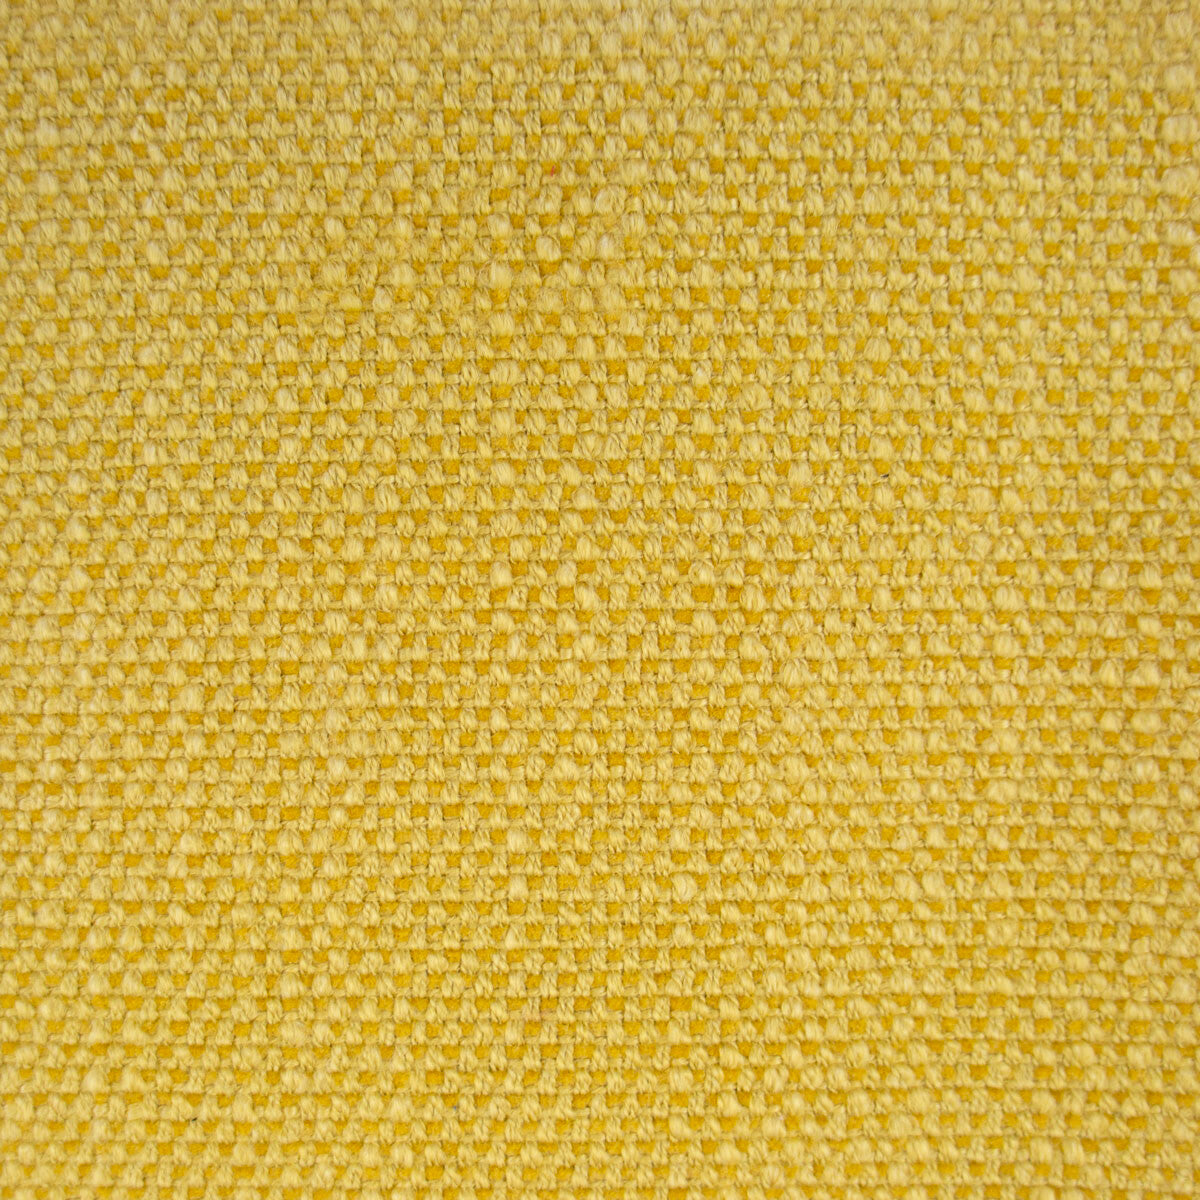 Hugo fabric in amarillo color - pattern LCT1053.019.0 - by Gaston y Daniela in the Lorenzo Castillo VI collection